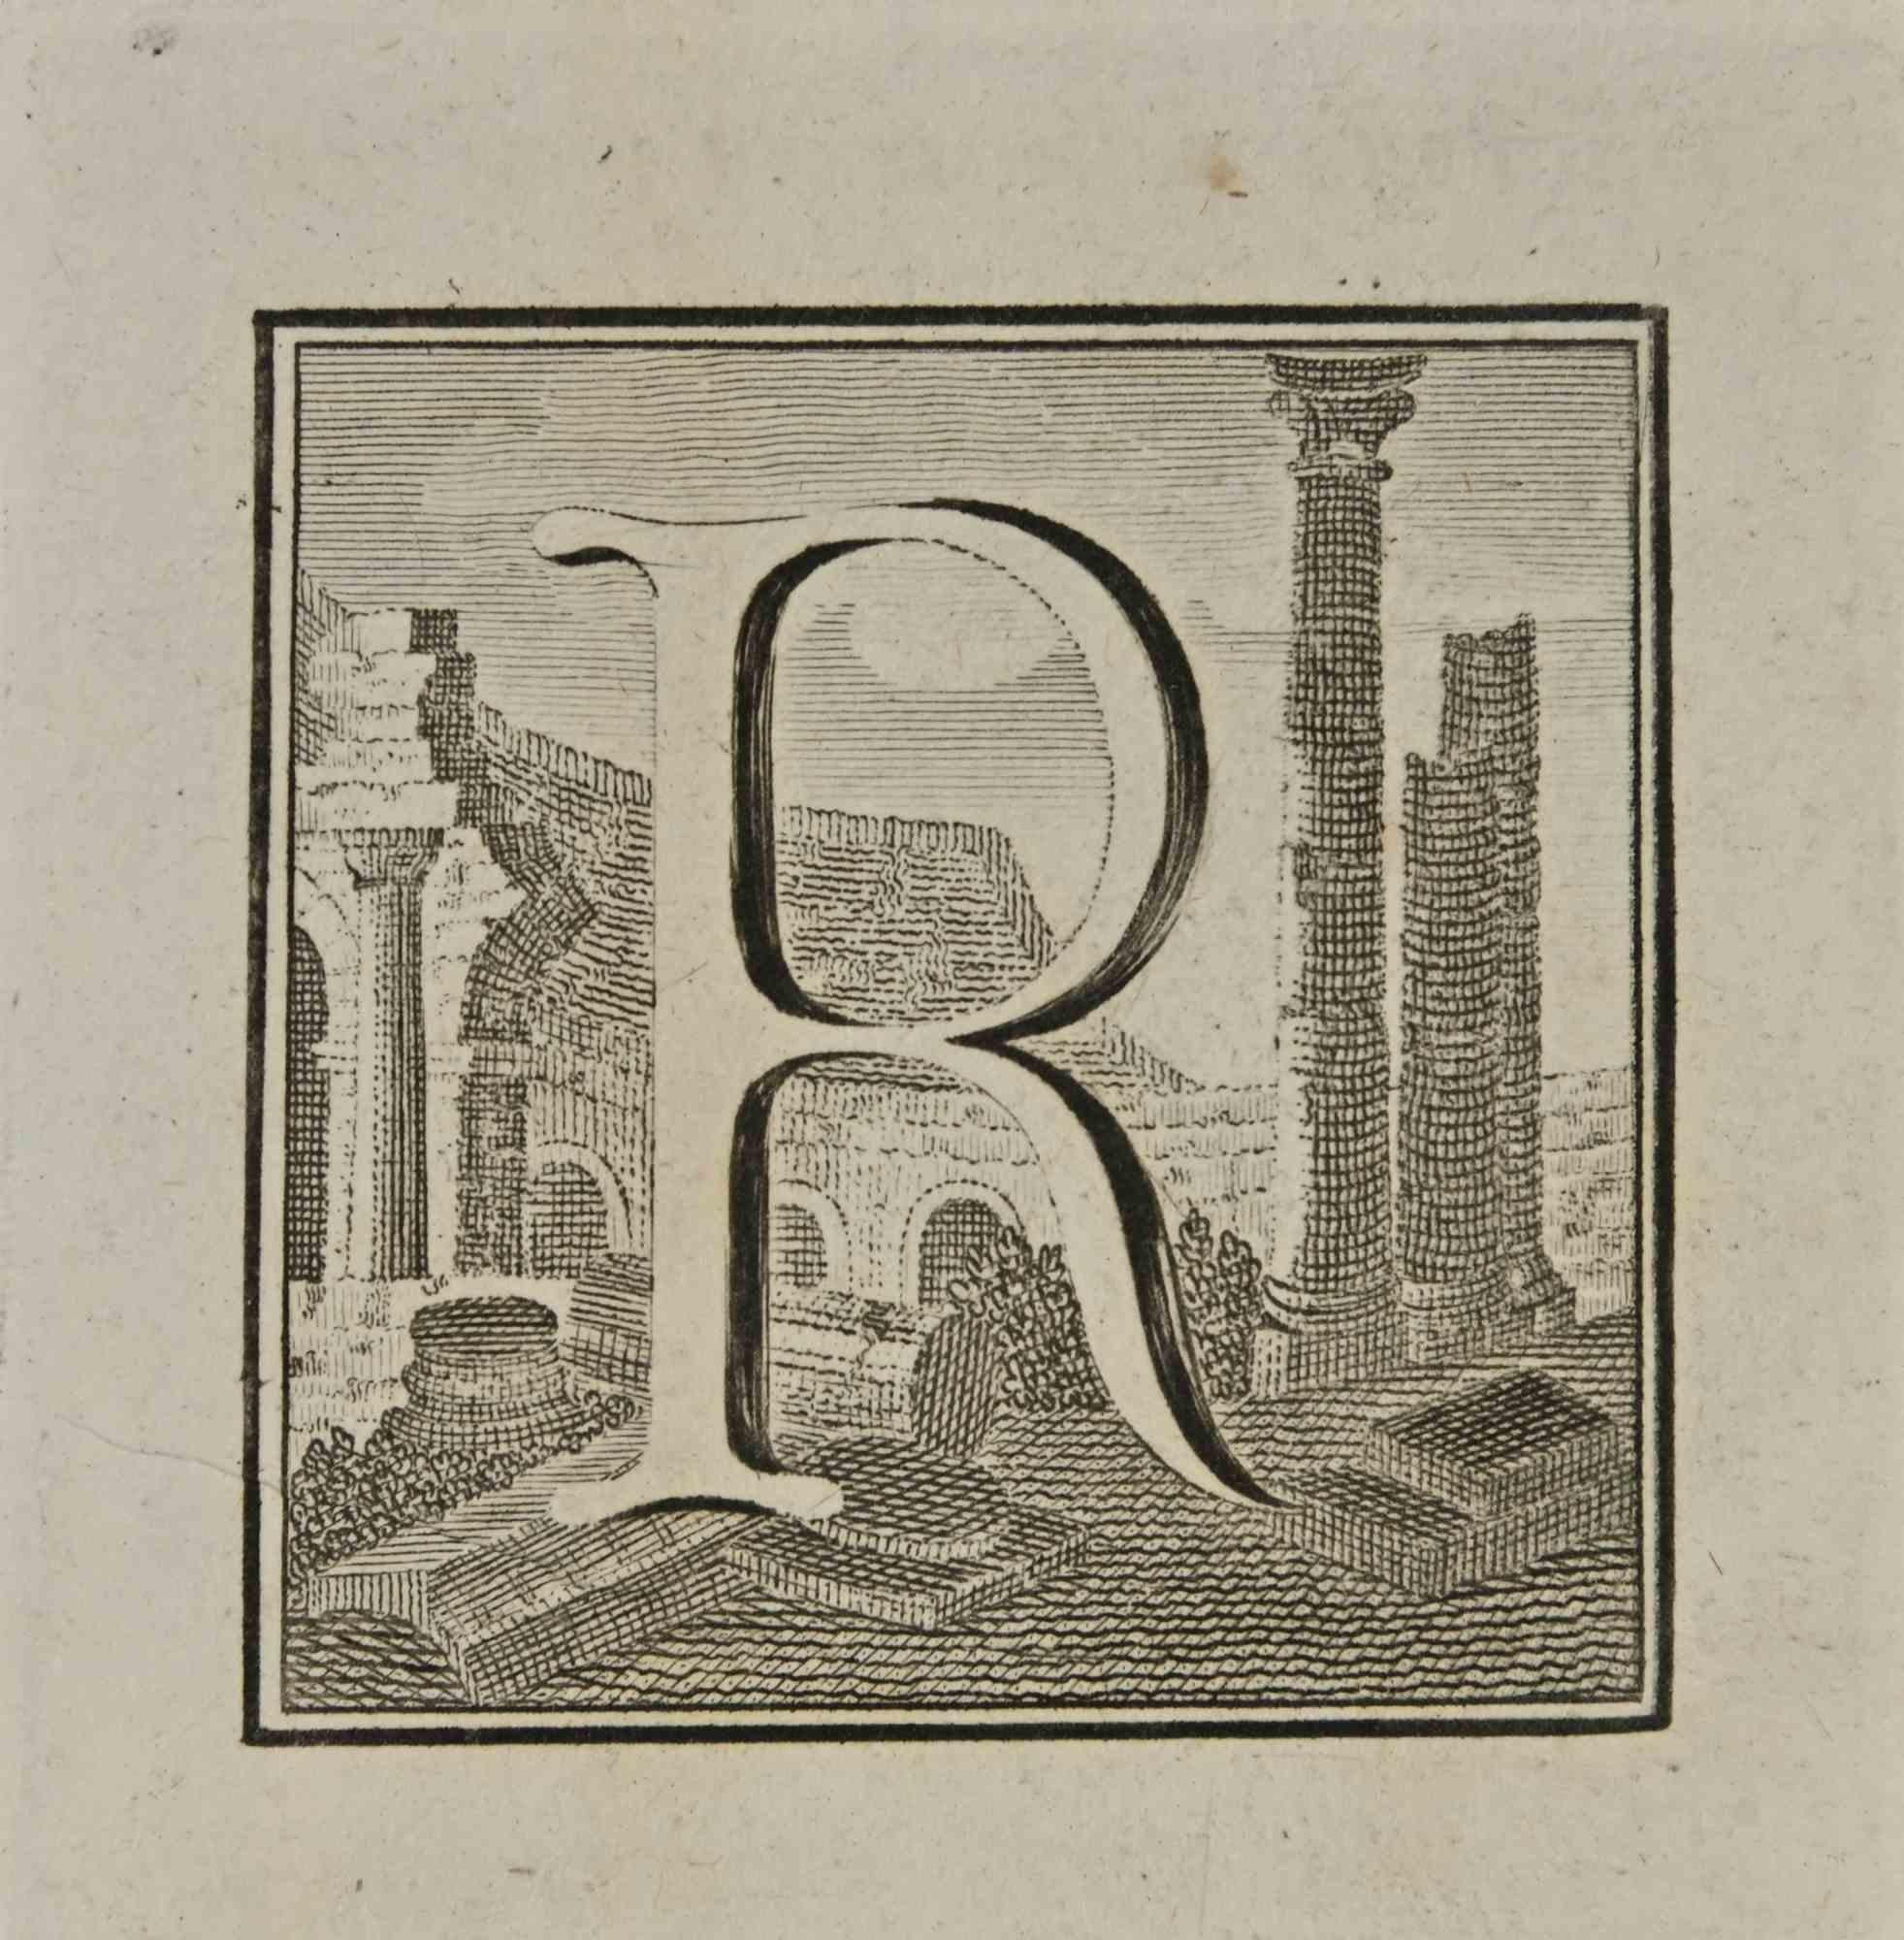 Buchstabe des Alphabets R aus der Serie "Antiquitäten von Herculaneum", ist eine Radierung auf Papier, die von Luigi Vanvitelli im 18.

Guter Zustand mit einigen Stockflecken.

Die Radierung gehört zu der Druckserie "Antiquities of Herculaneum